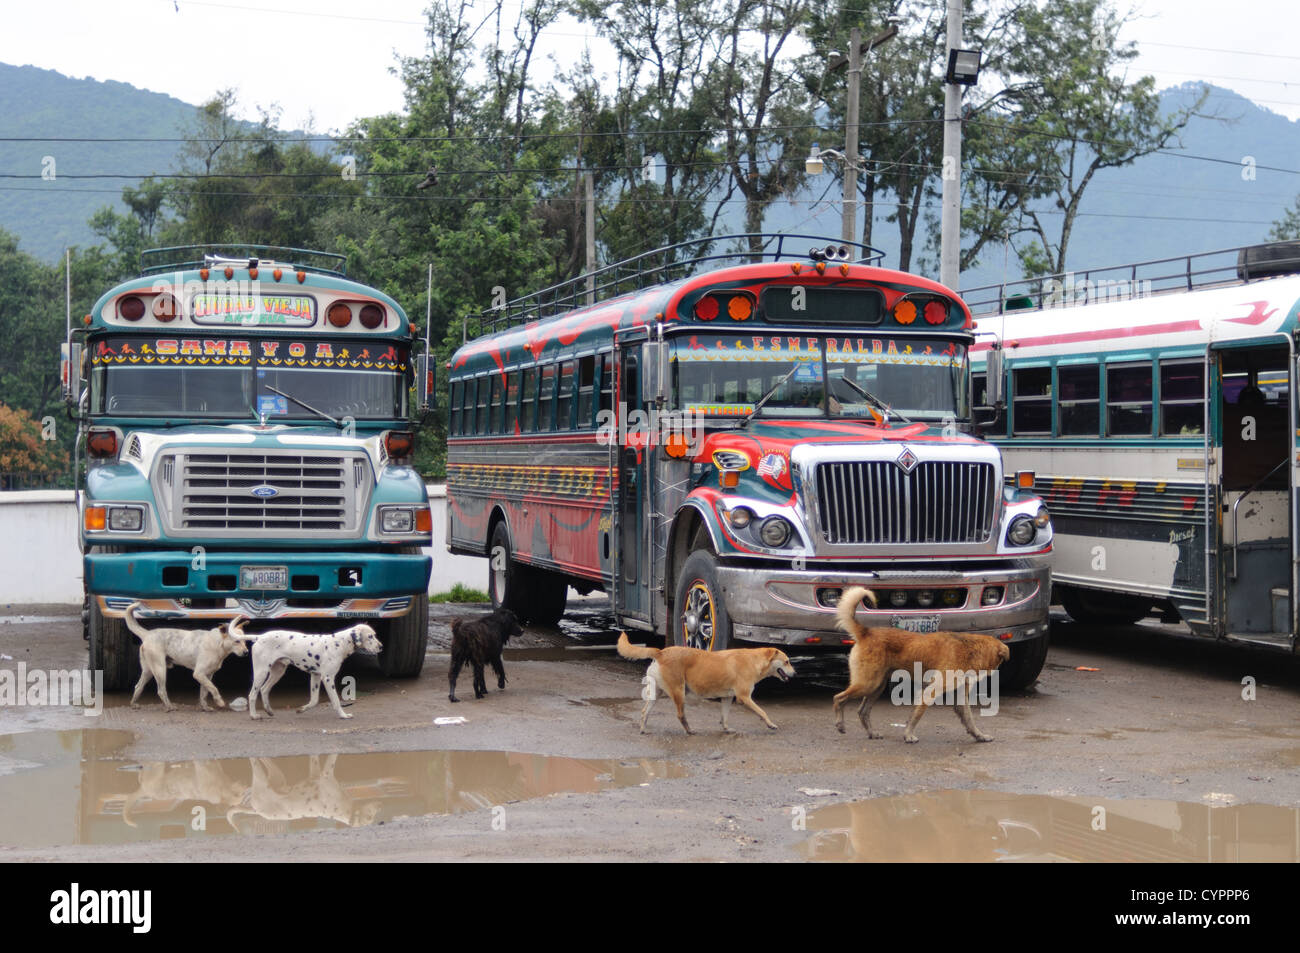 Eine Gruppe von Hunden Mühle rund um das Huhn Busse hinter dem Mercado Municipal (Stadtmarkt) in Antigua, Guatemala. Aus diesem umfangreichen zentralen Busbahnhof strahlenförmig der Routen in Guatemala. Oft bunt bemalt, die Huhn-Busse sind nachgerüsteten amerikanische Schulbusse und bieten ein günstiges Transportmittel im ganzen Land. Stockfoto